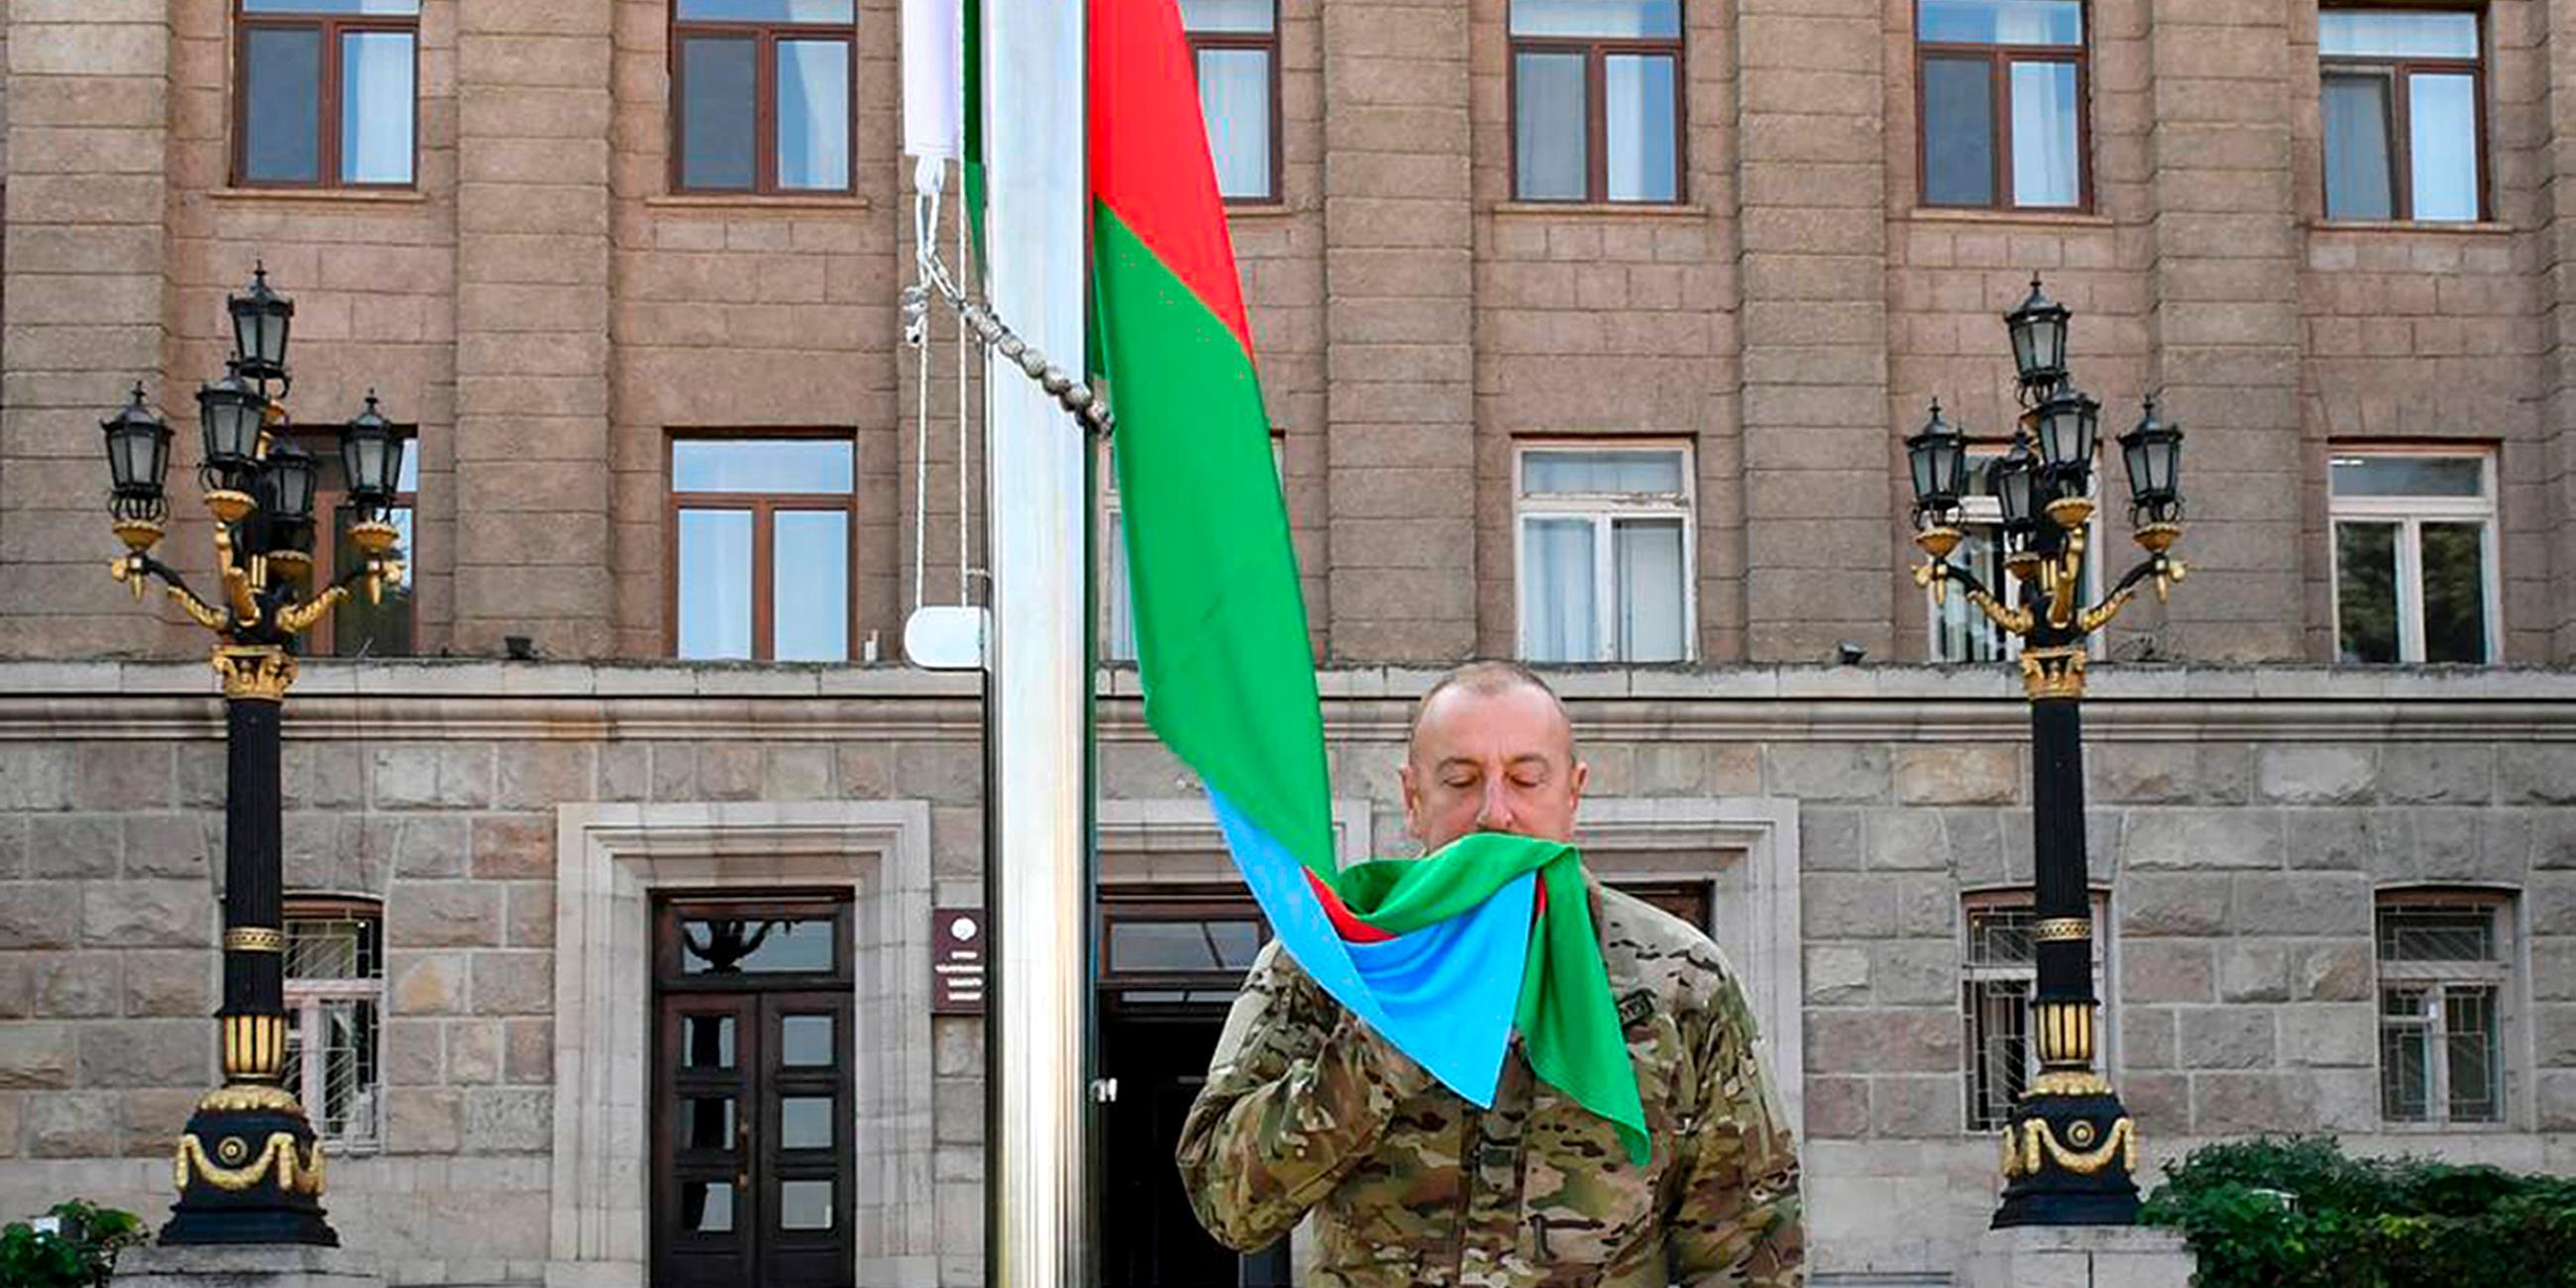 Aserbaidschans Präsident Ilham Aliyev hisst und küsst die aserbaidschanische Flagge in der Hauptstadt von Bergkarabach.